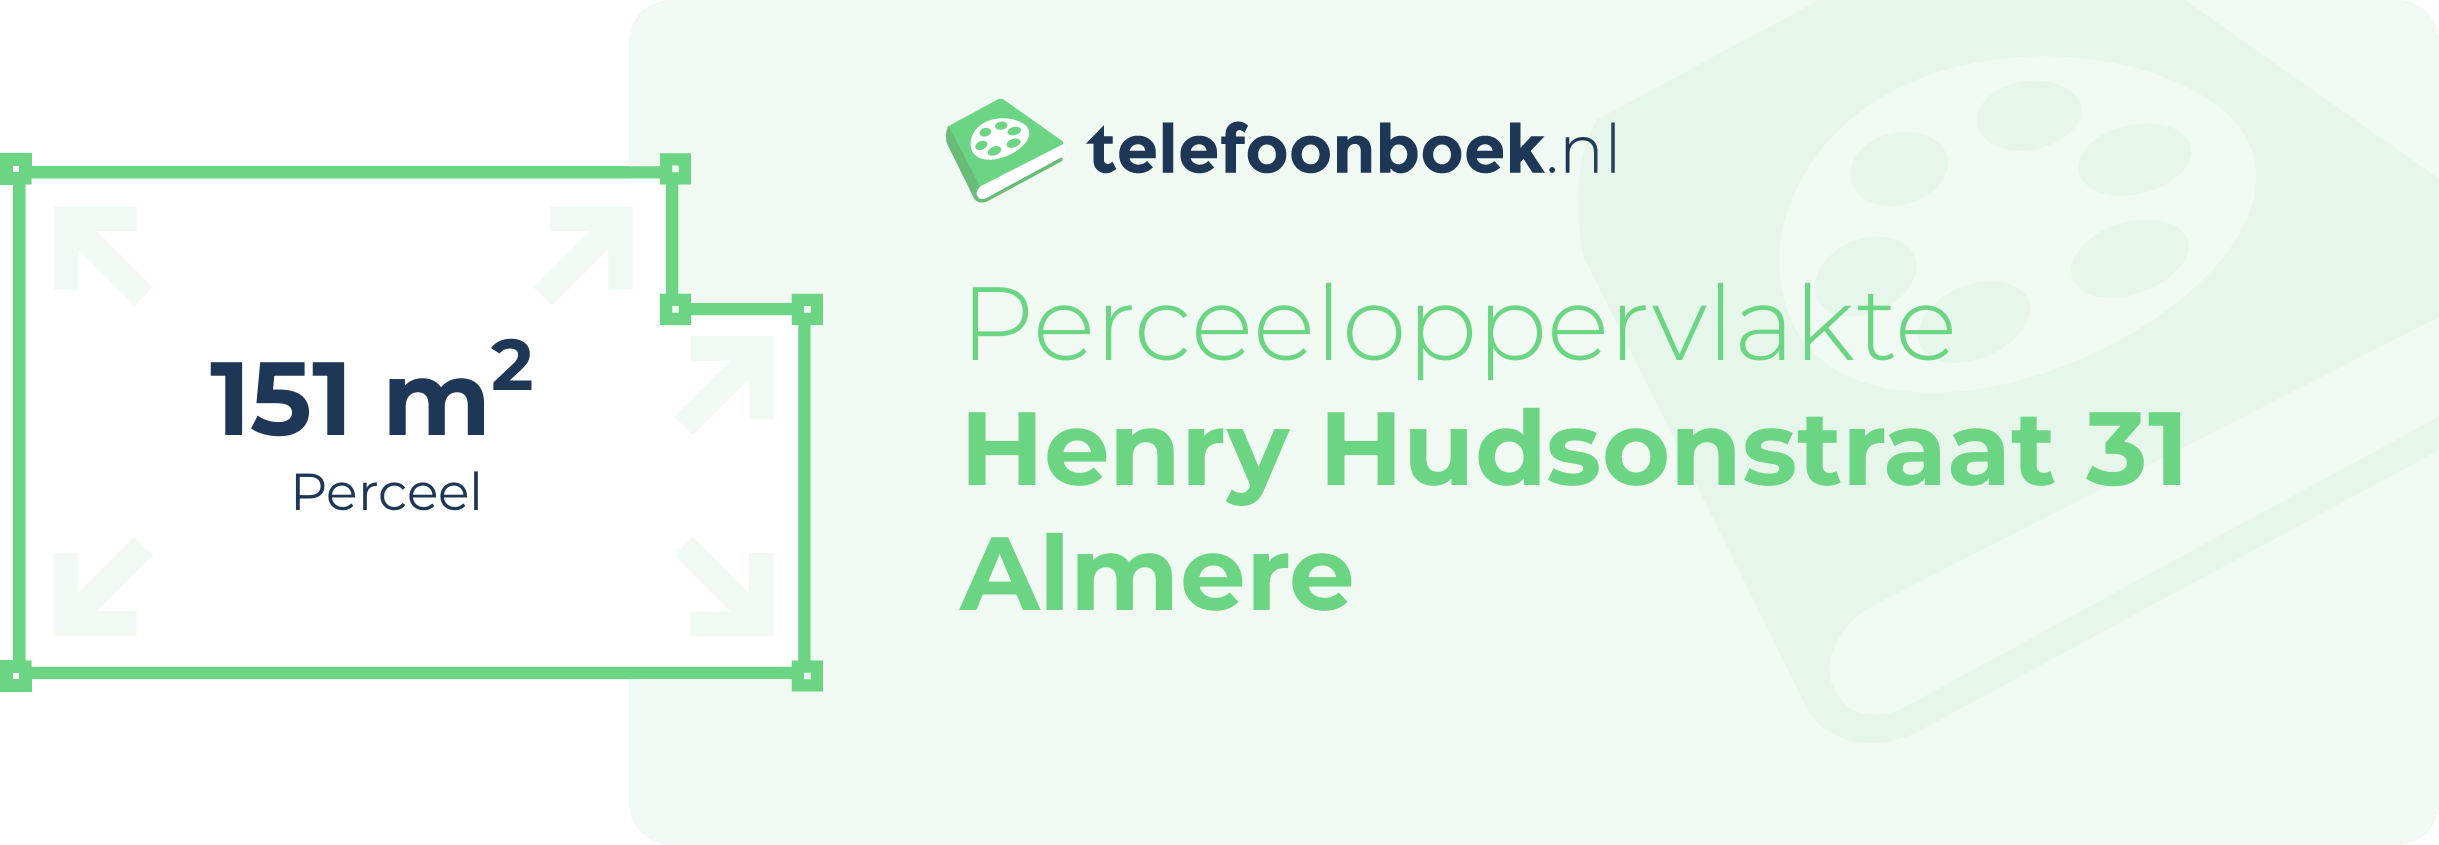 Perceeloppervlakte Henry Hudsonstraat 31 Almere